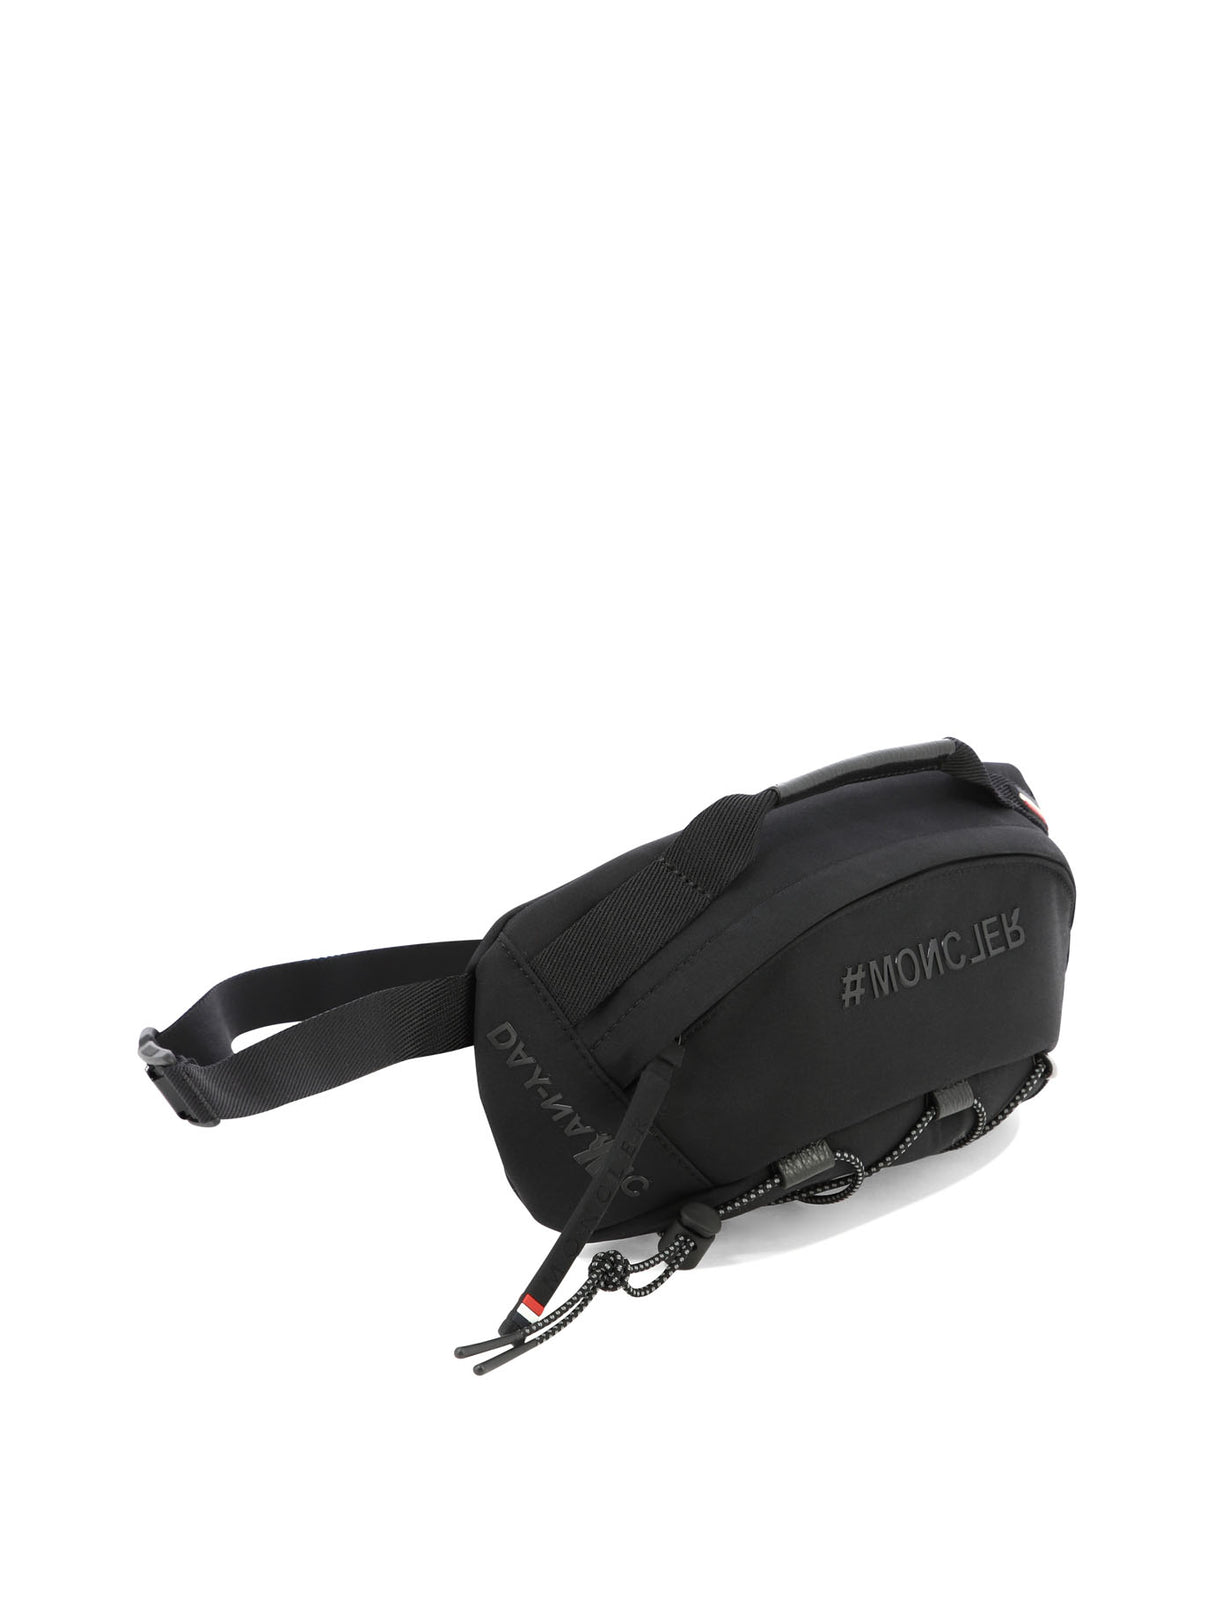 MONCLER GRENOBLE Nylon Belt Handbag for Men - Black